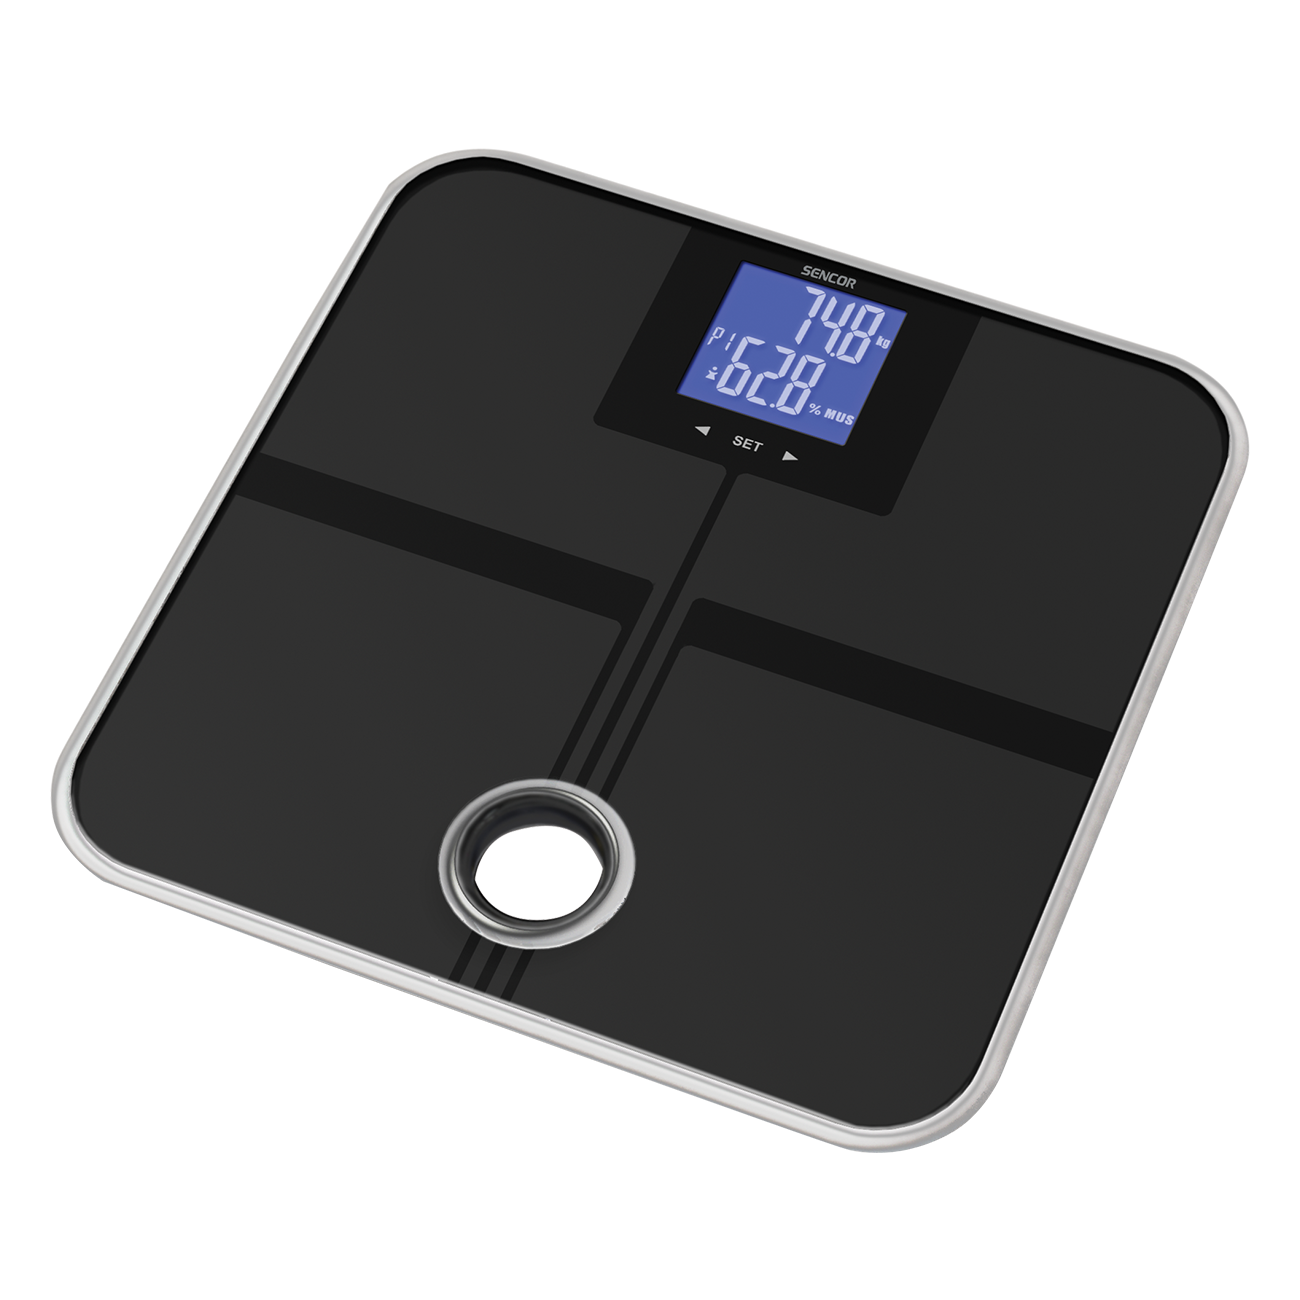 SBS 7000 الة قياس الوزن الشخصي مخصصة لقياس نسبة الدهون و الماء و العضلات و العظم